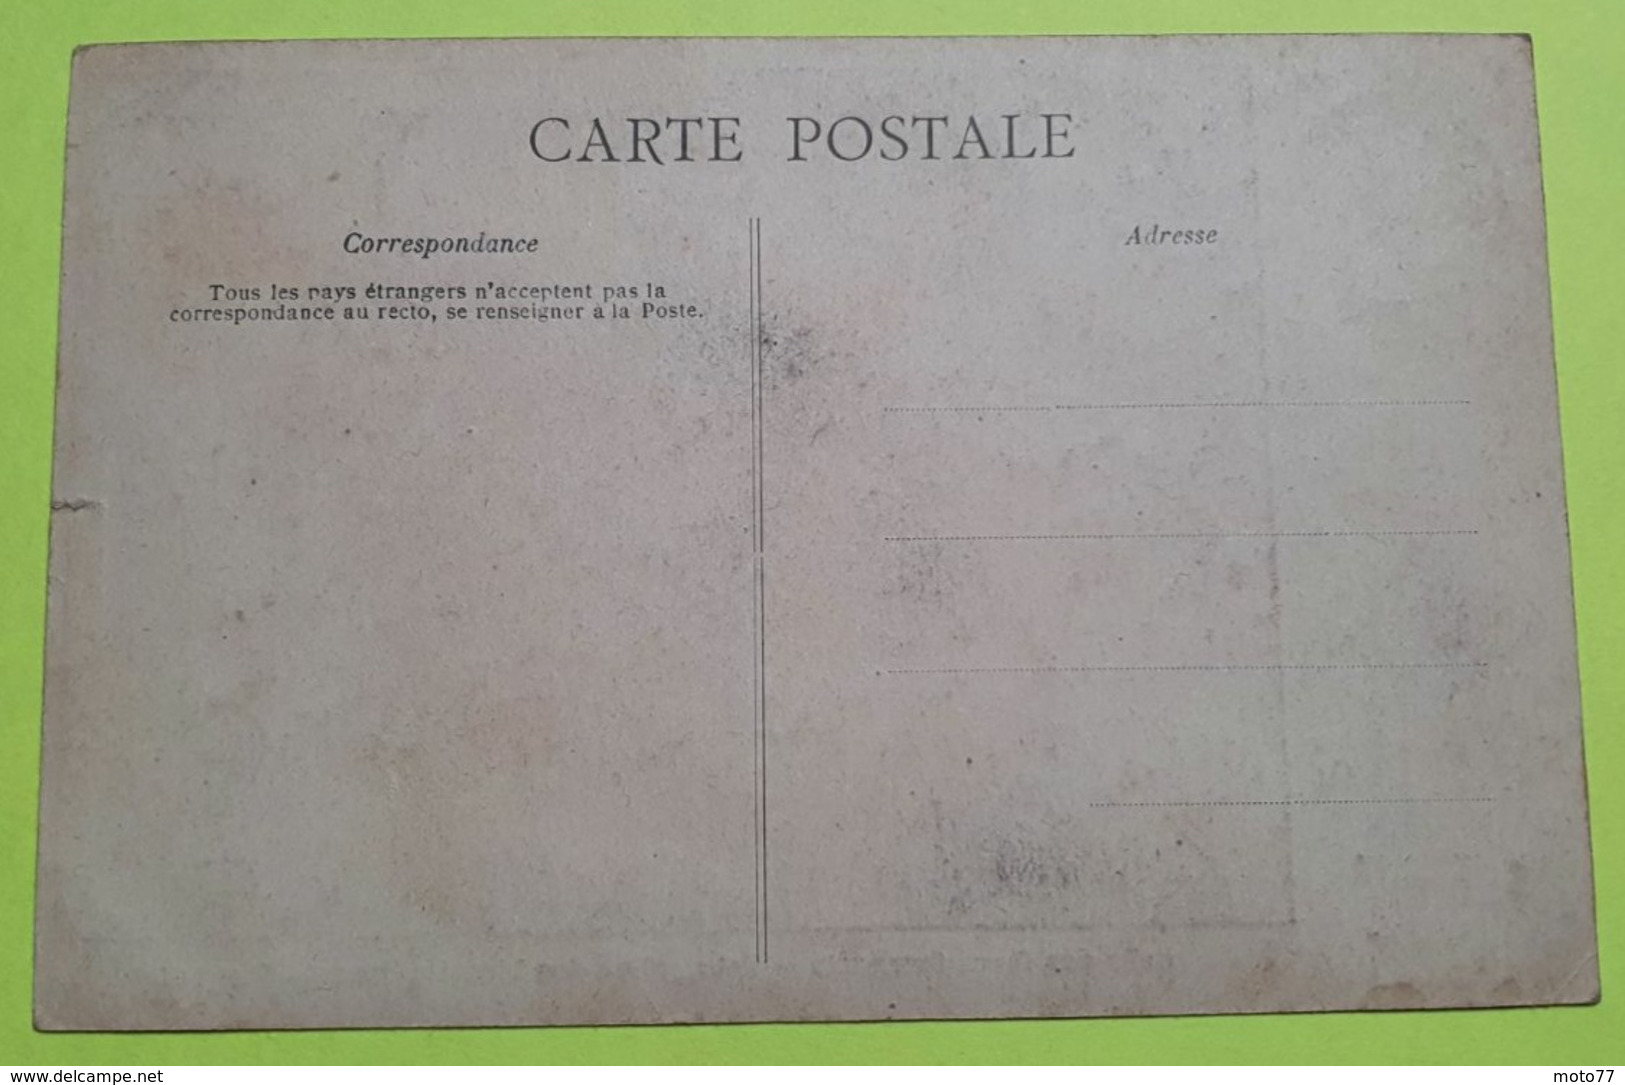 6 CPA Cartes Postales - Série Des Cartes " BLANCHE " Anciennes Usine Lefèvre Utile - Biscuits LU /36 - Lu